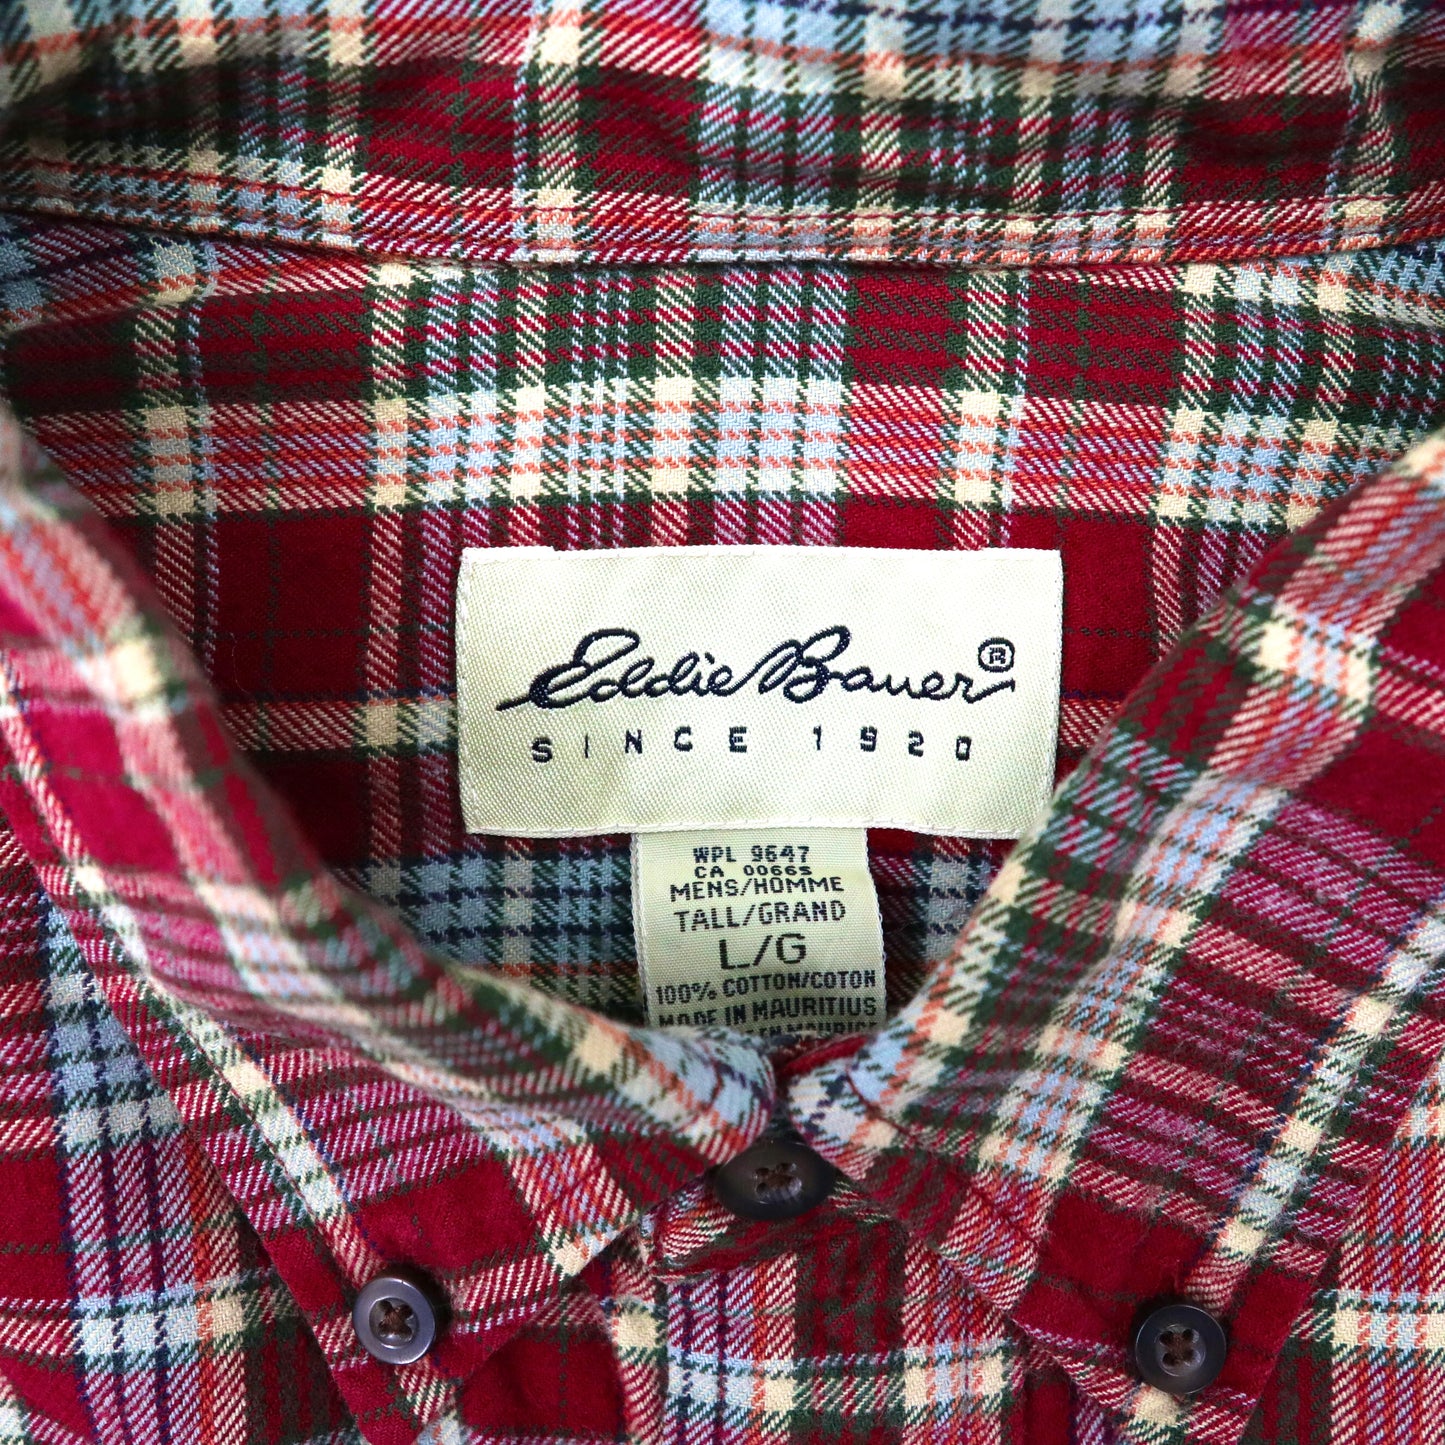 Eddie Bauer ボタンダウンシャツ L レッド チェック コットン 90年代